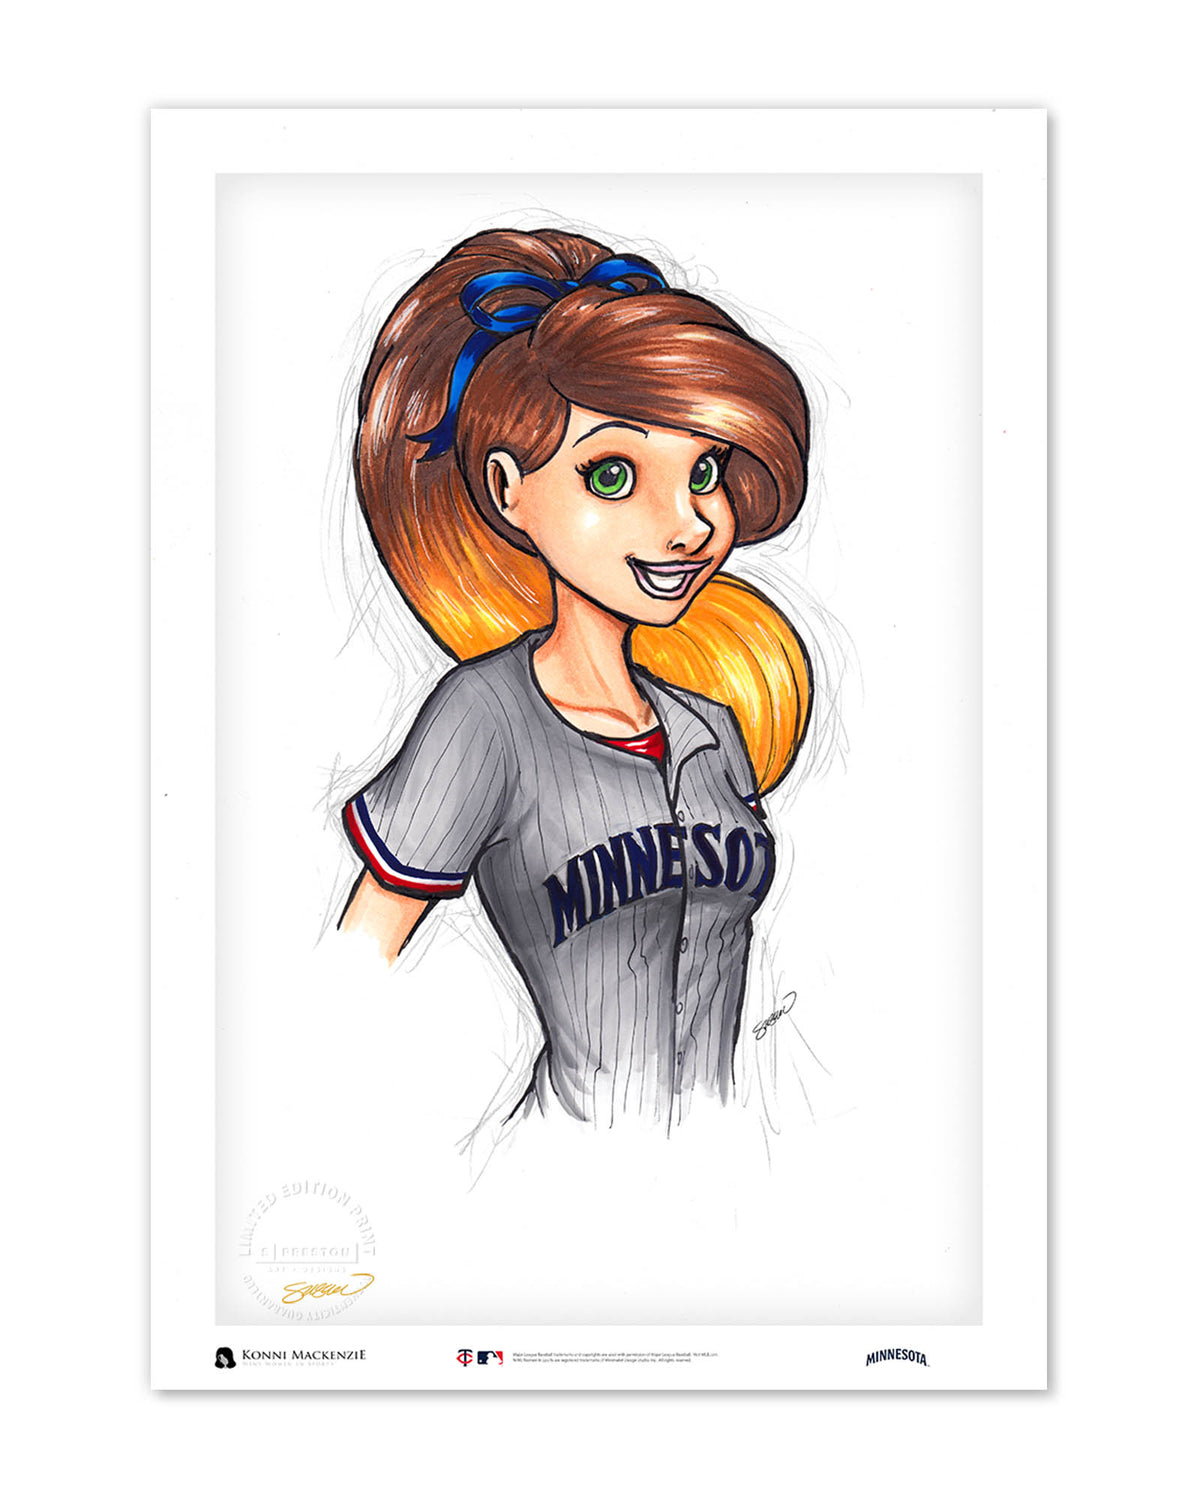 WinS® She/Her/Baseball - Twins - Konni Mackenzie